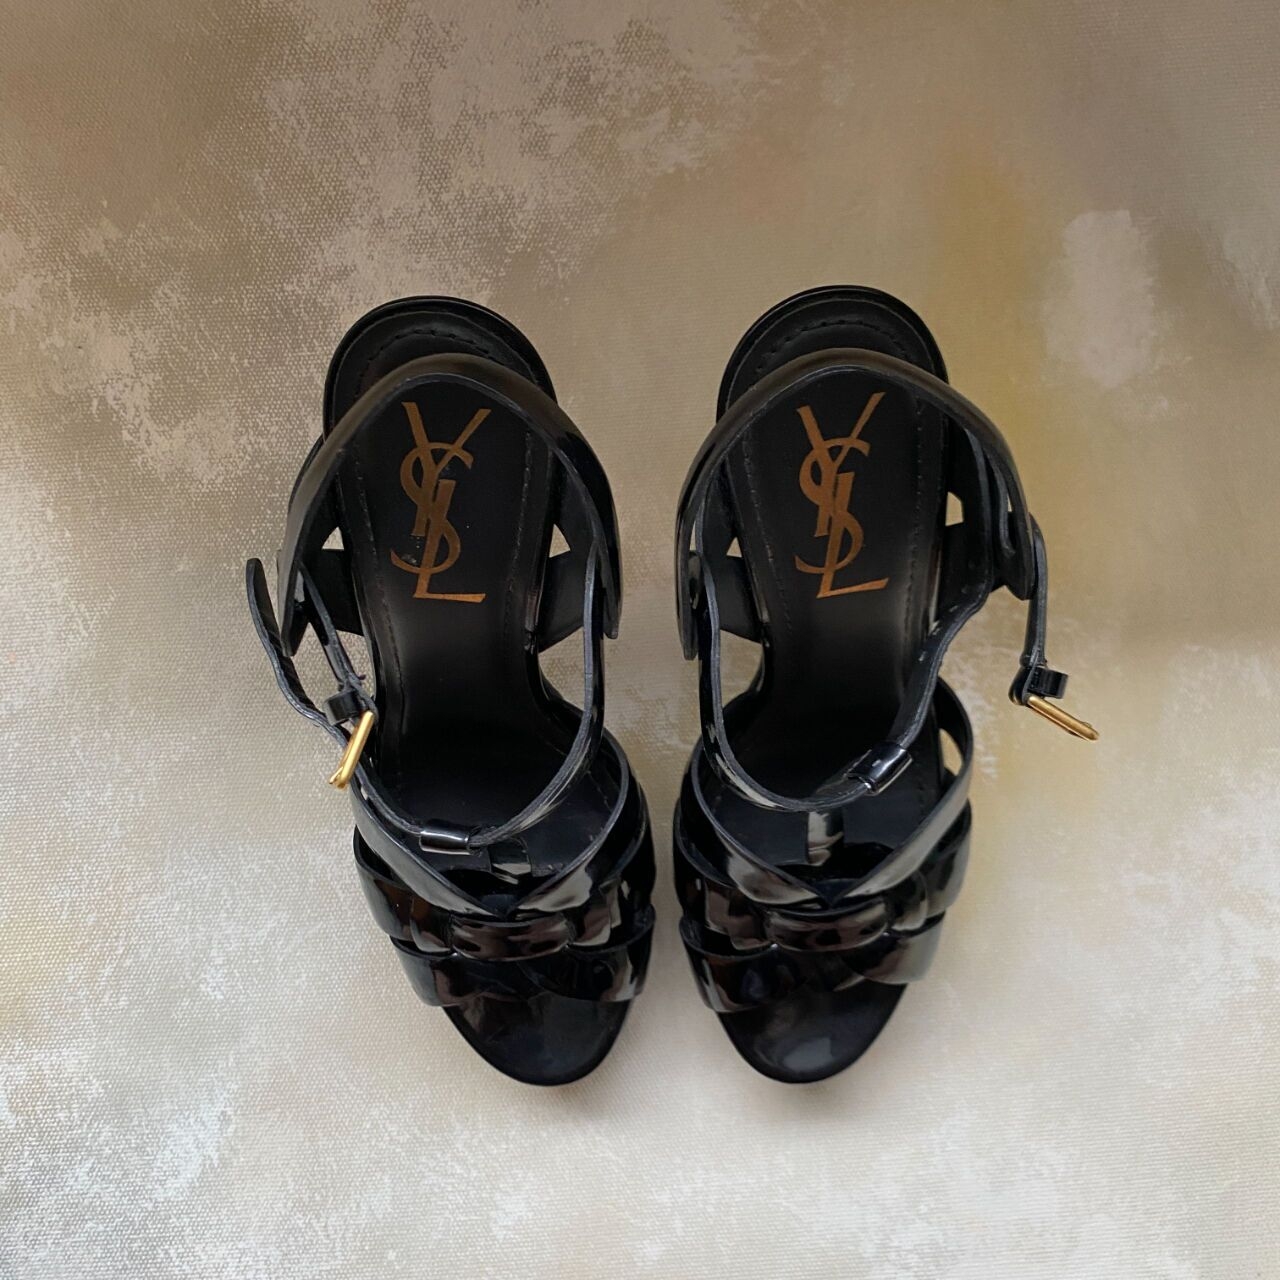 Yves Saint Laurent Black Tribute Heels